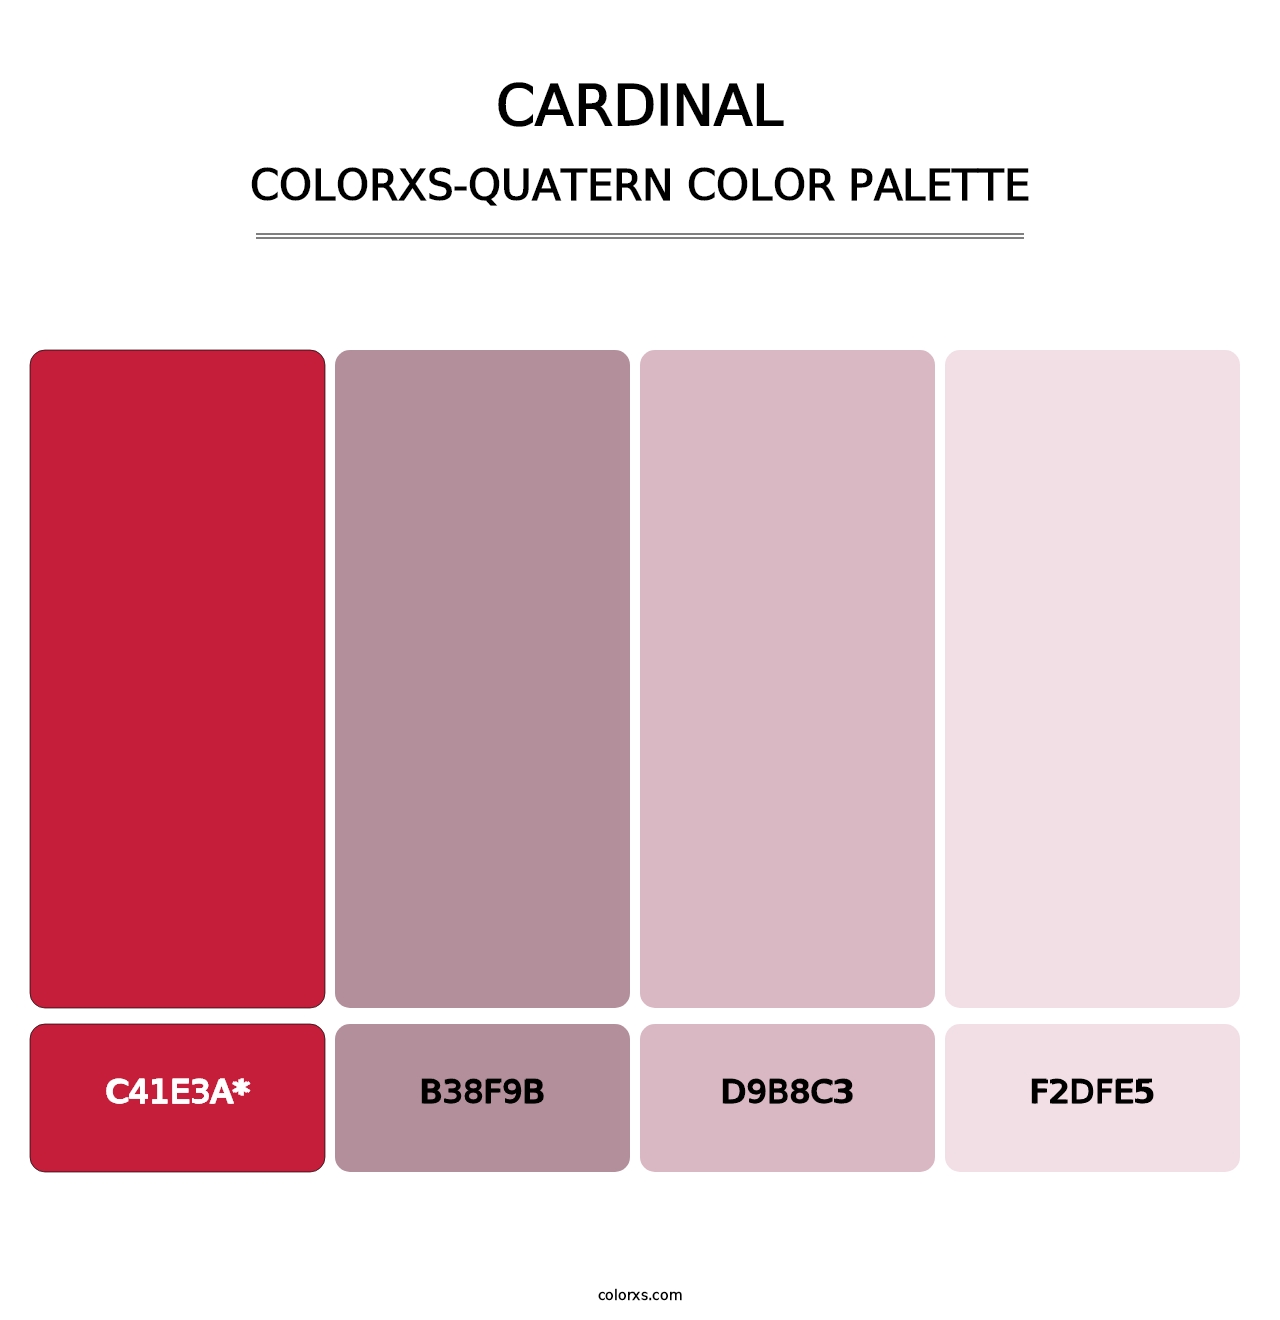 Cardinal - Colorxs Quatern Palette